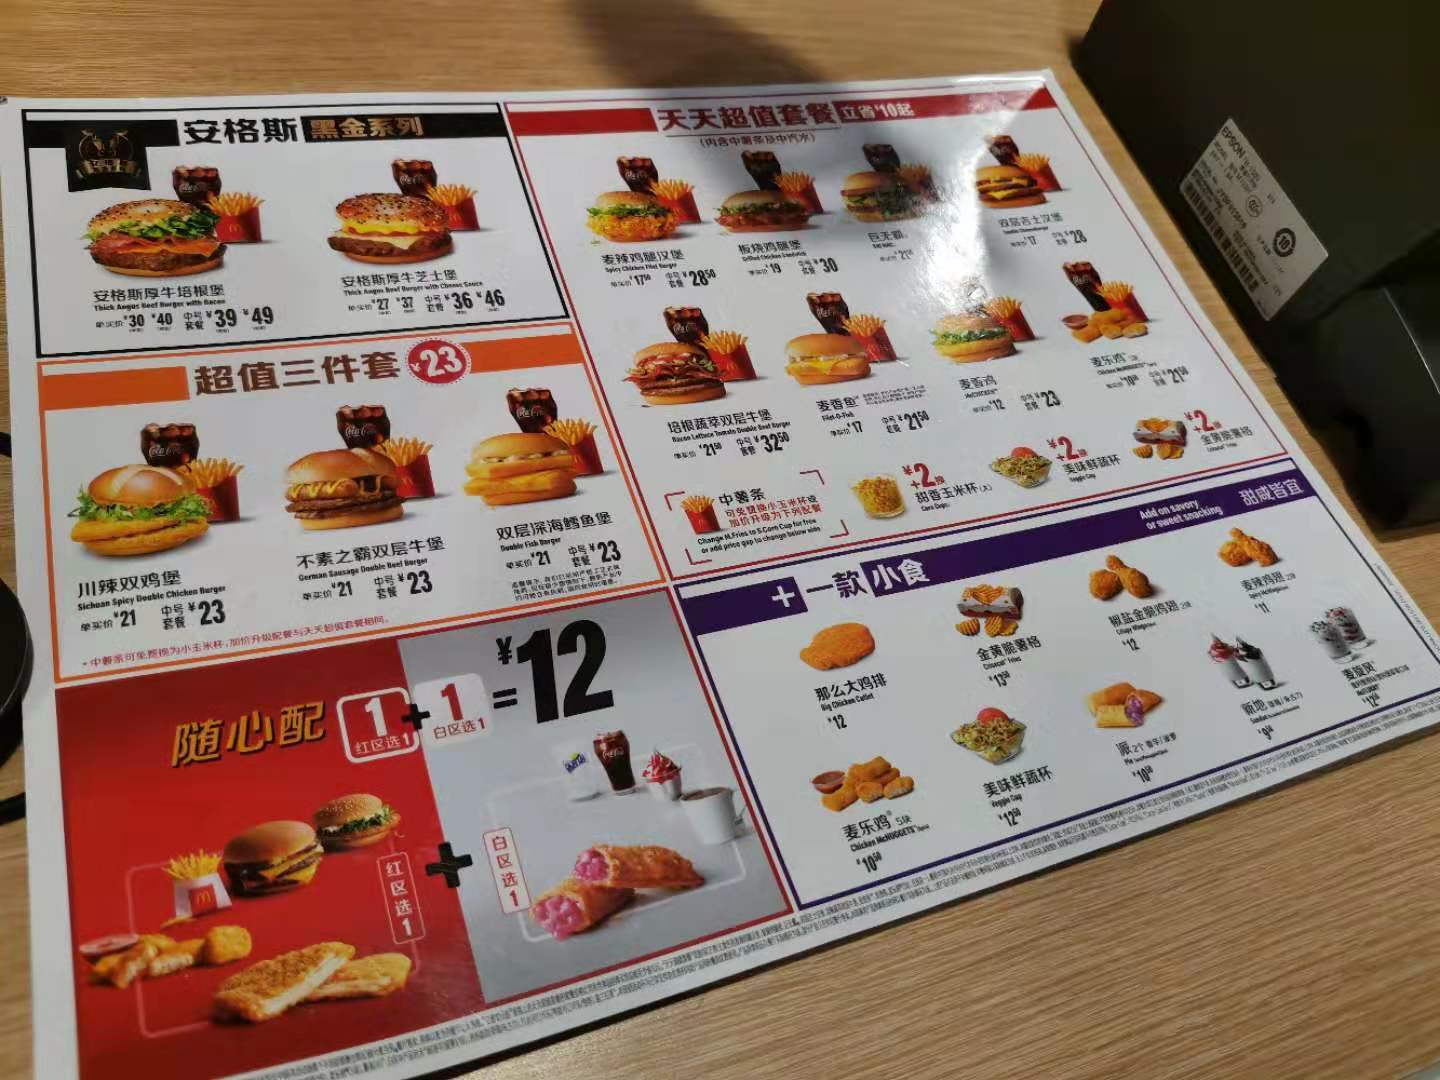 对于涨价原因,麦当劳方面回应新京报记者表示,目前6元早餐的促销活动